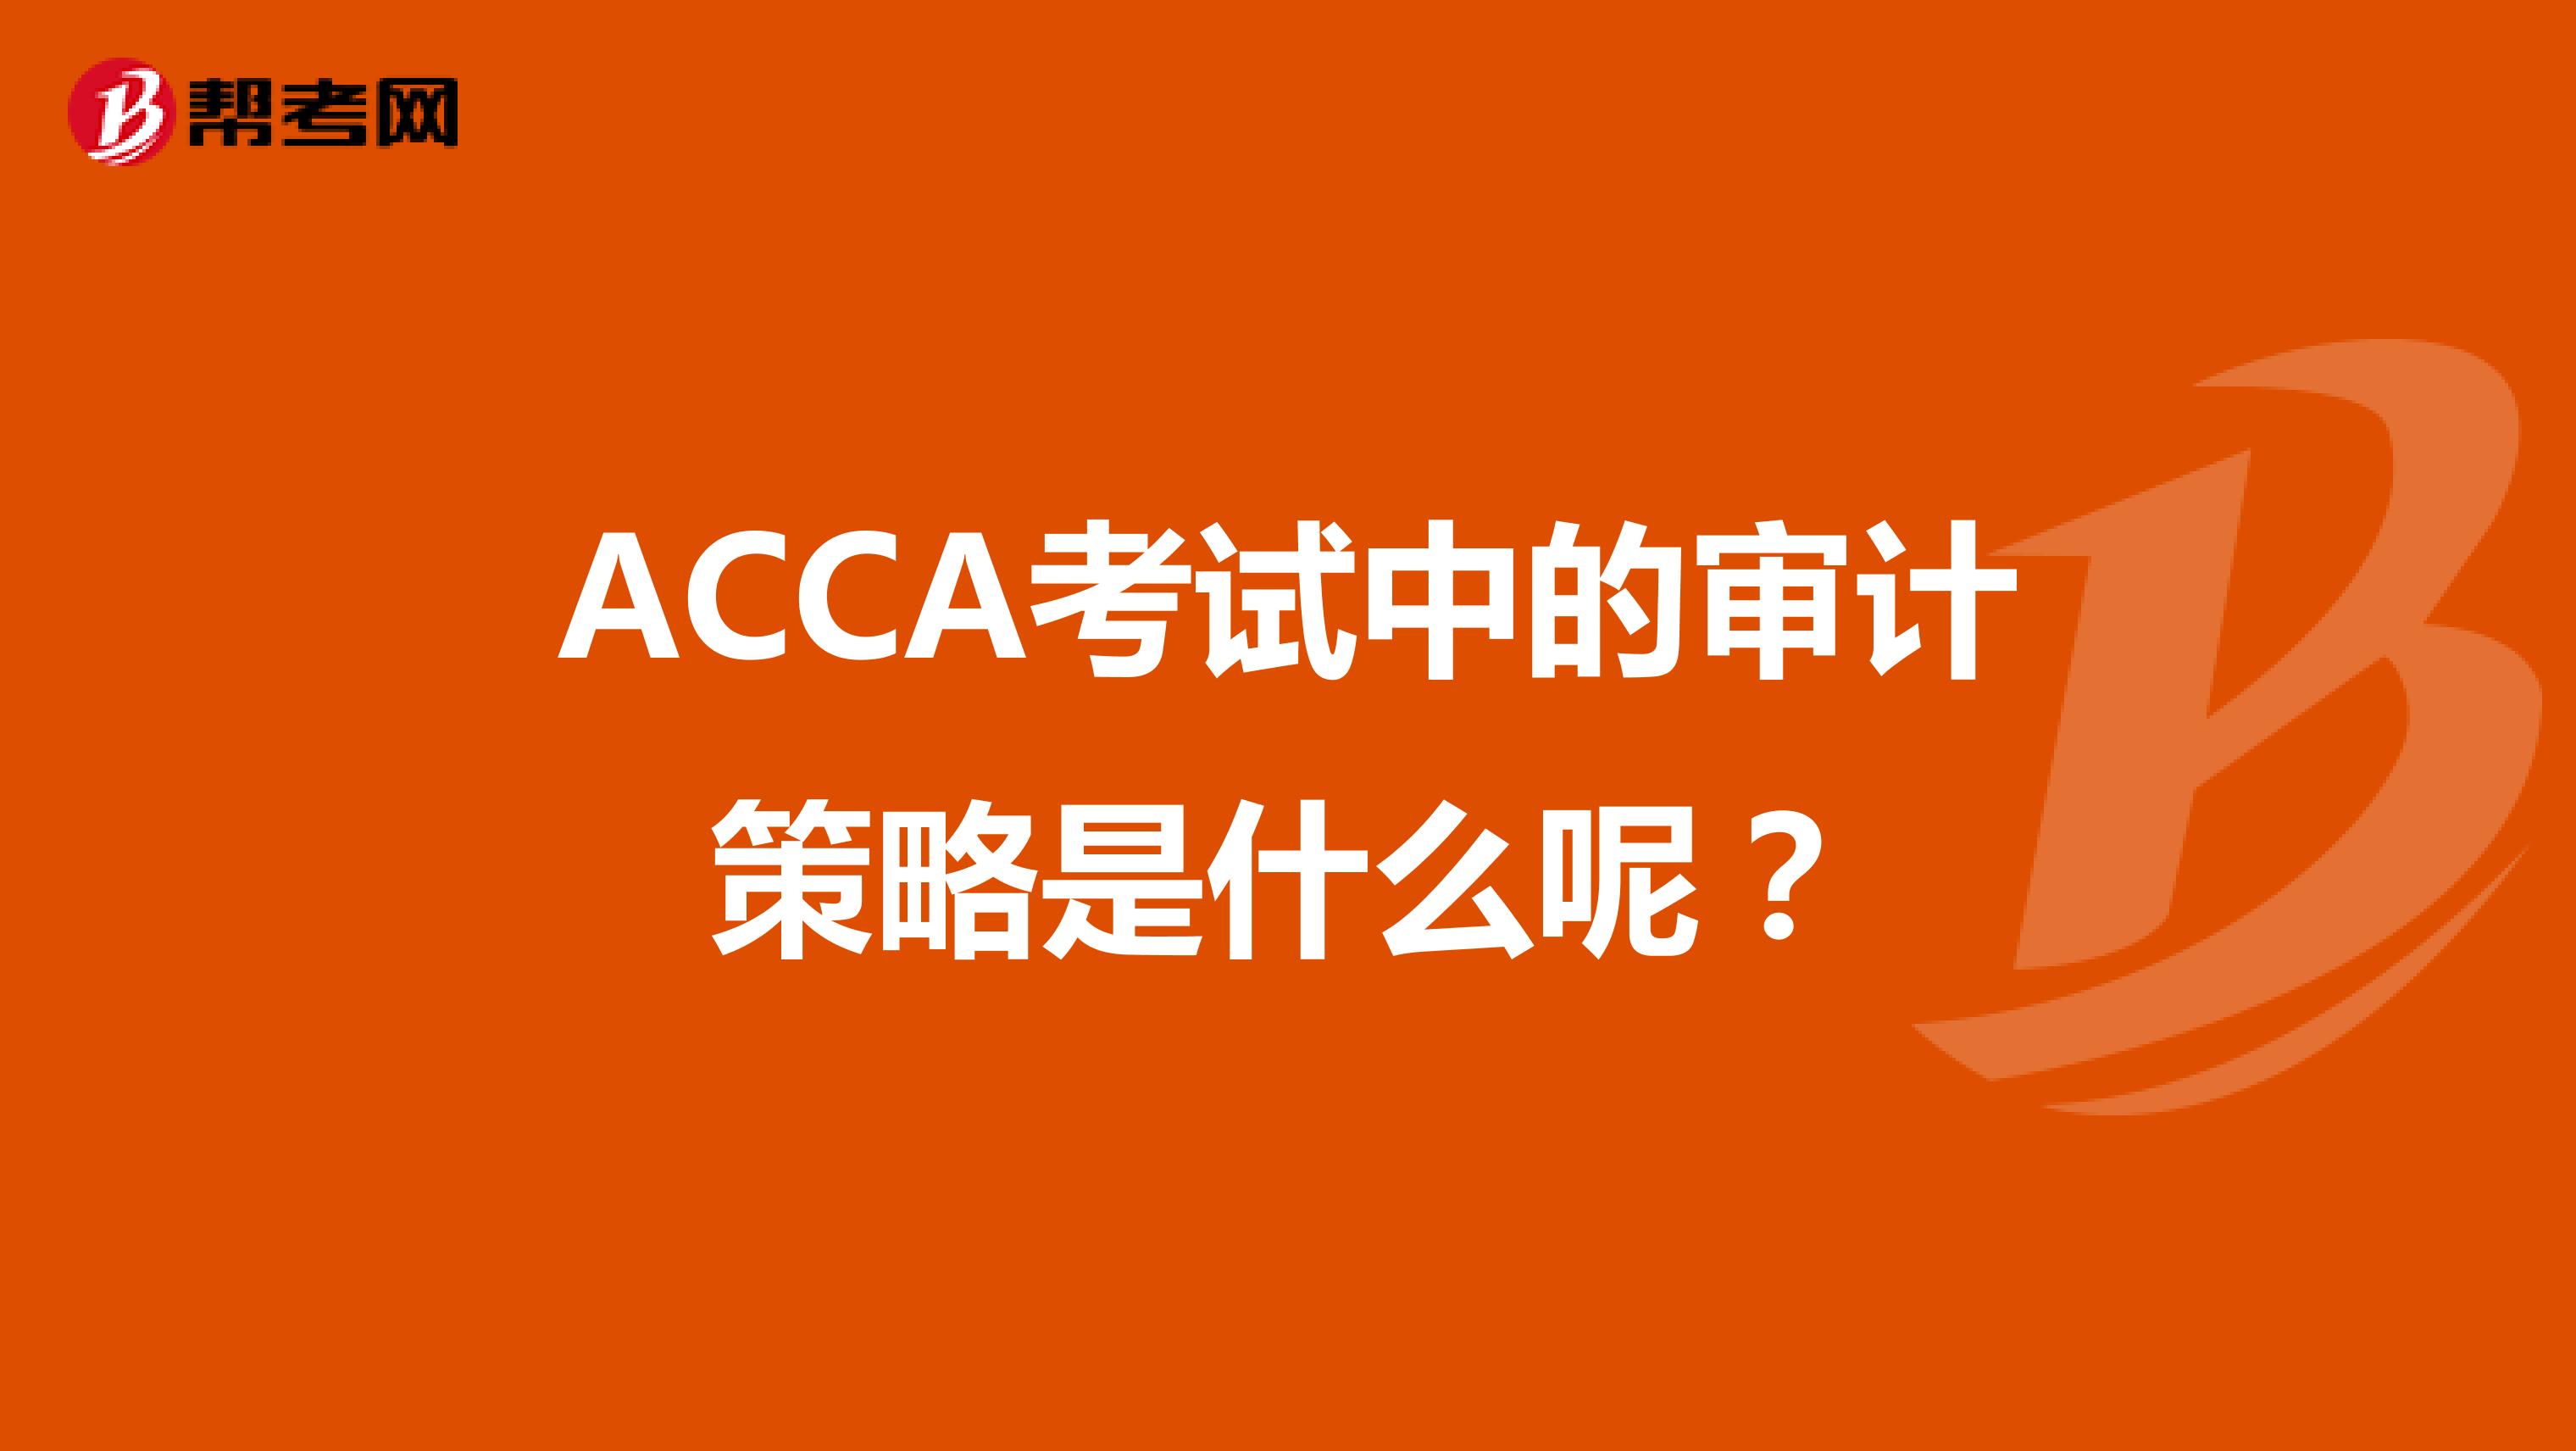 ACCA考试中的审计策略是什么呢？